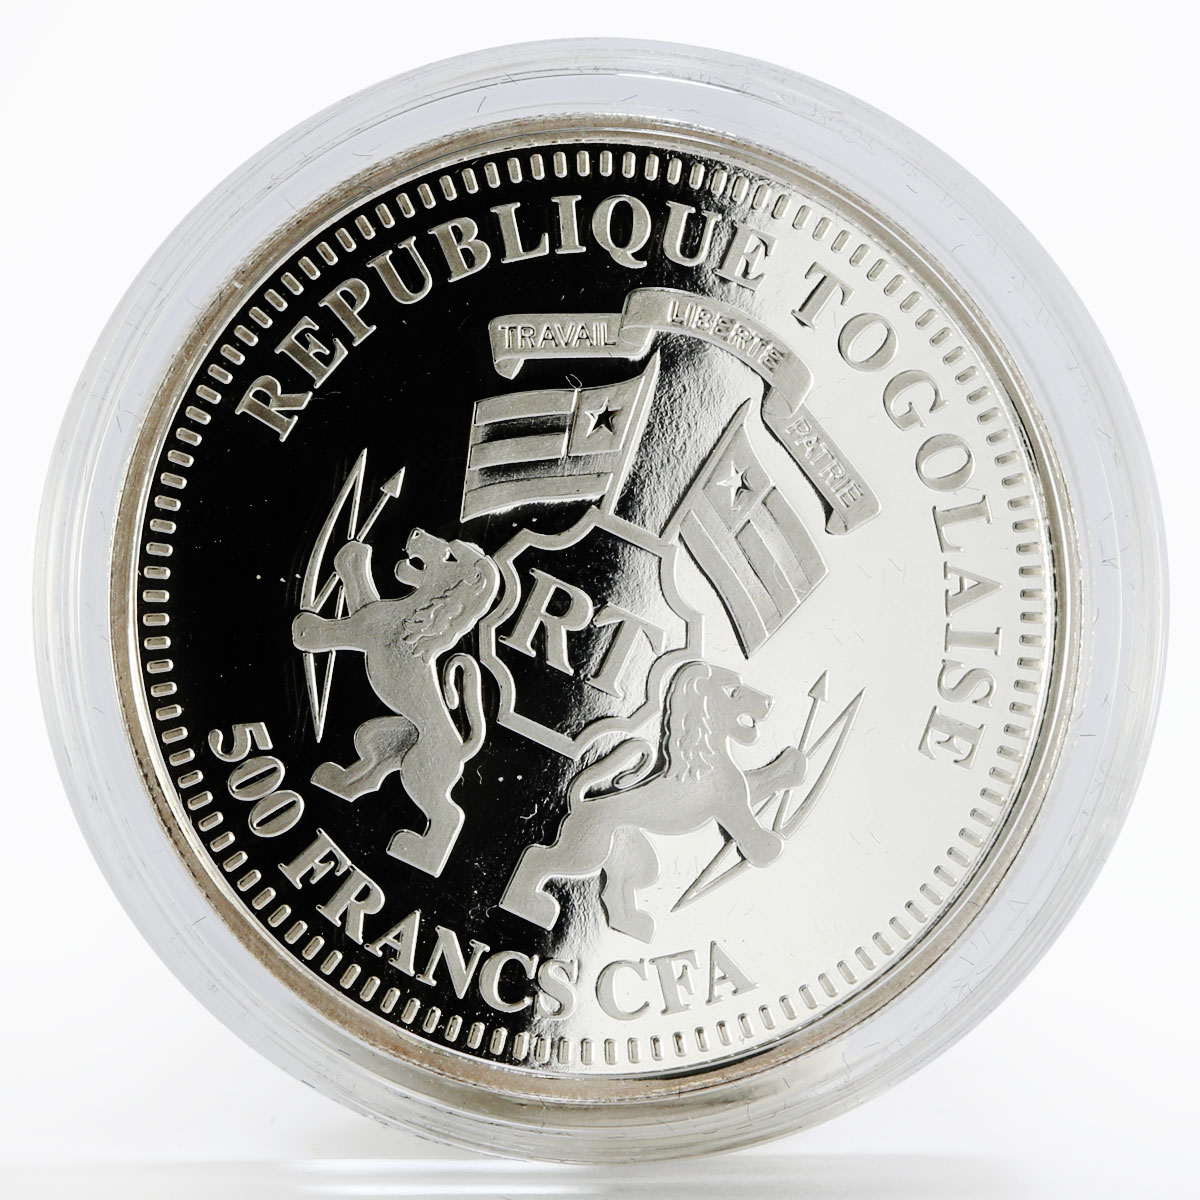 Togo 500 francs Sede Vacante silver coin 2013